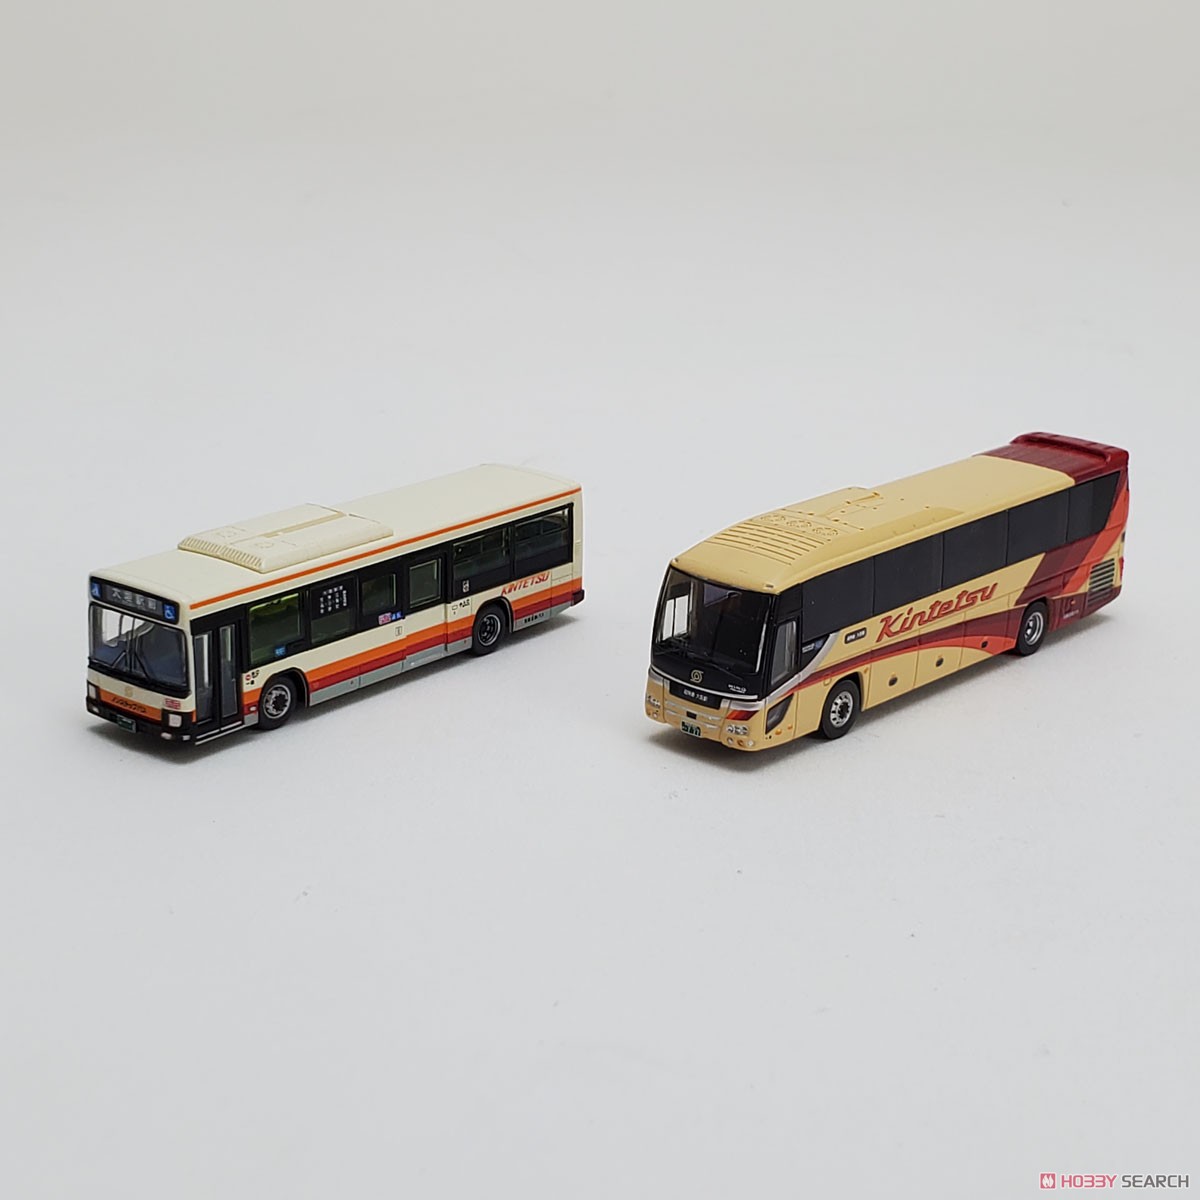 ザ・バスコレクション 名阪近鉄バス2台セット (2台セット) (鉄道模型) 商品画像9